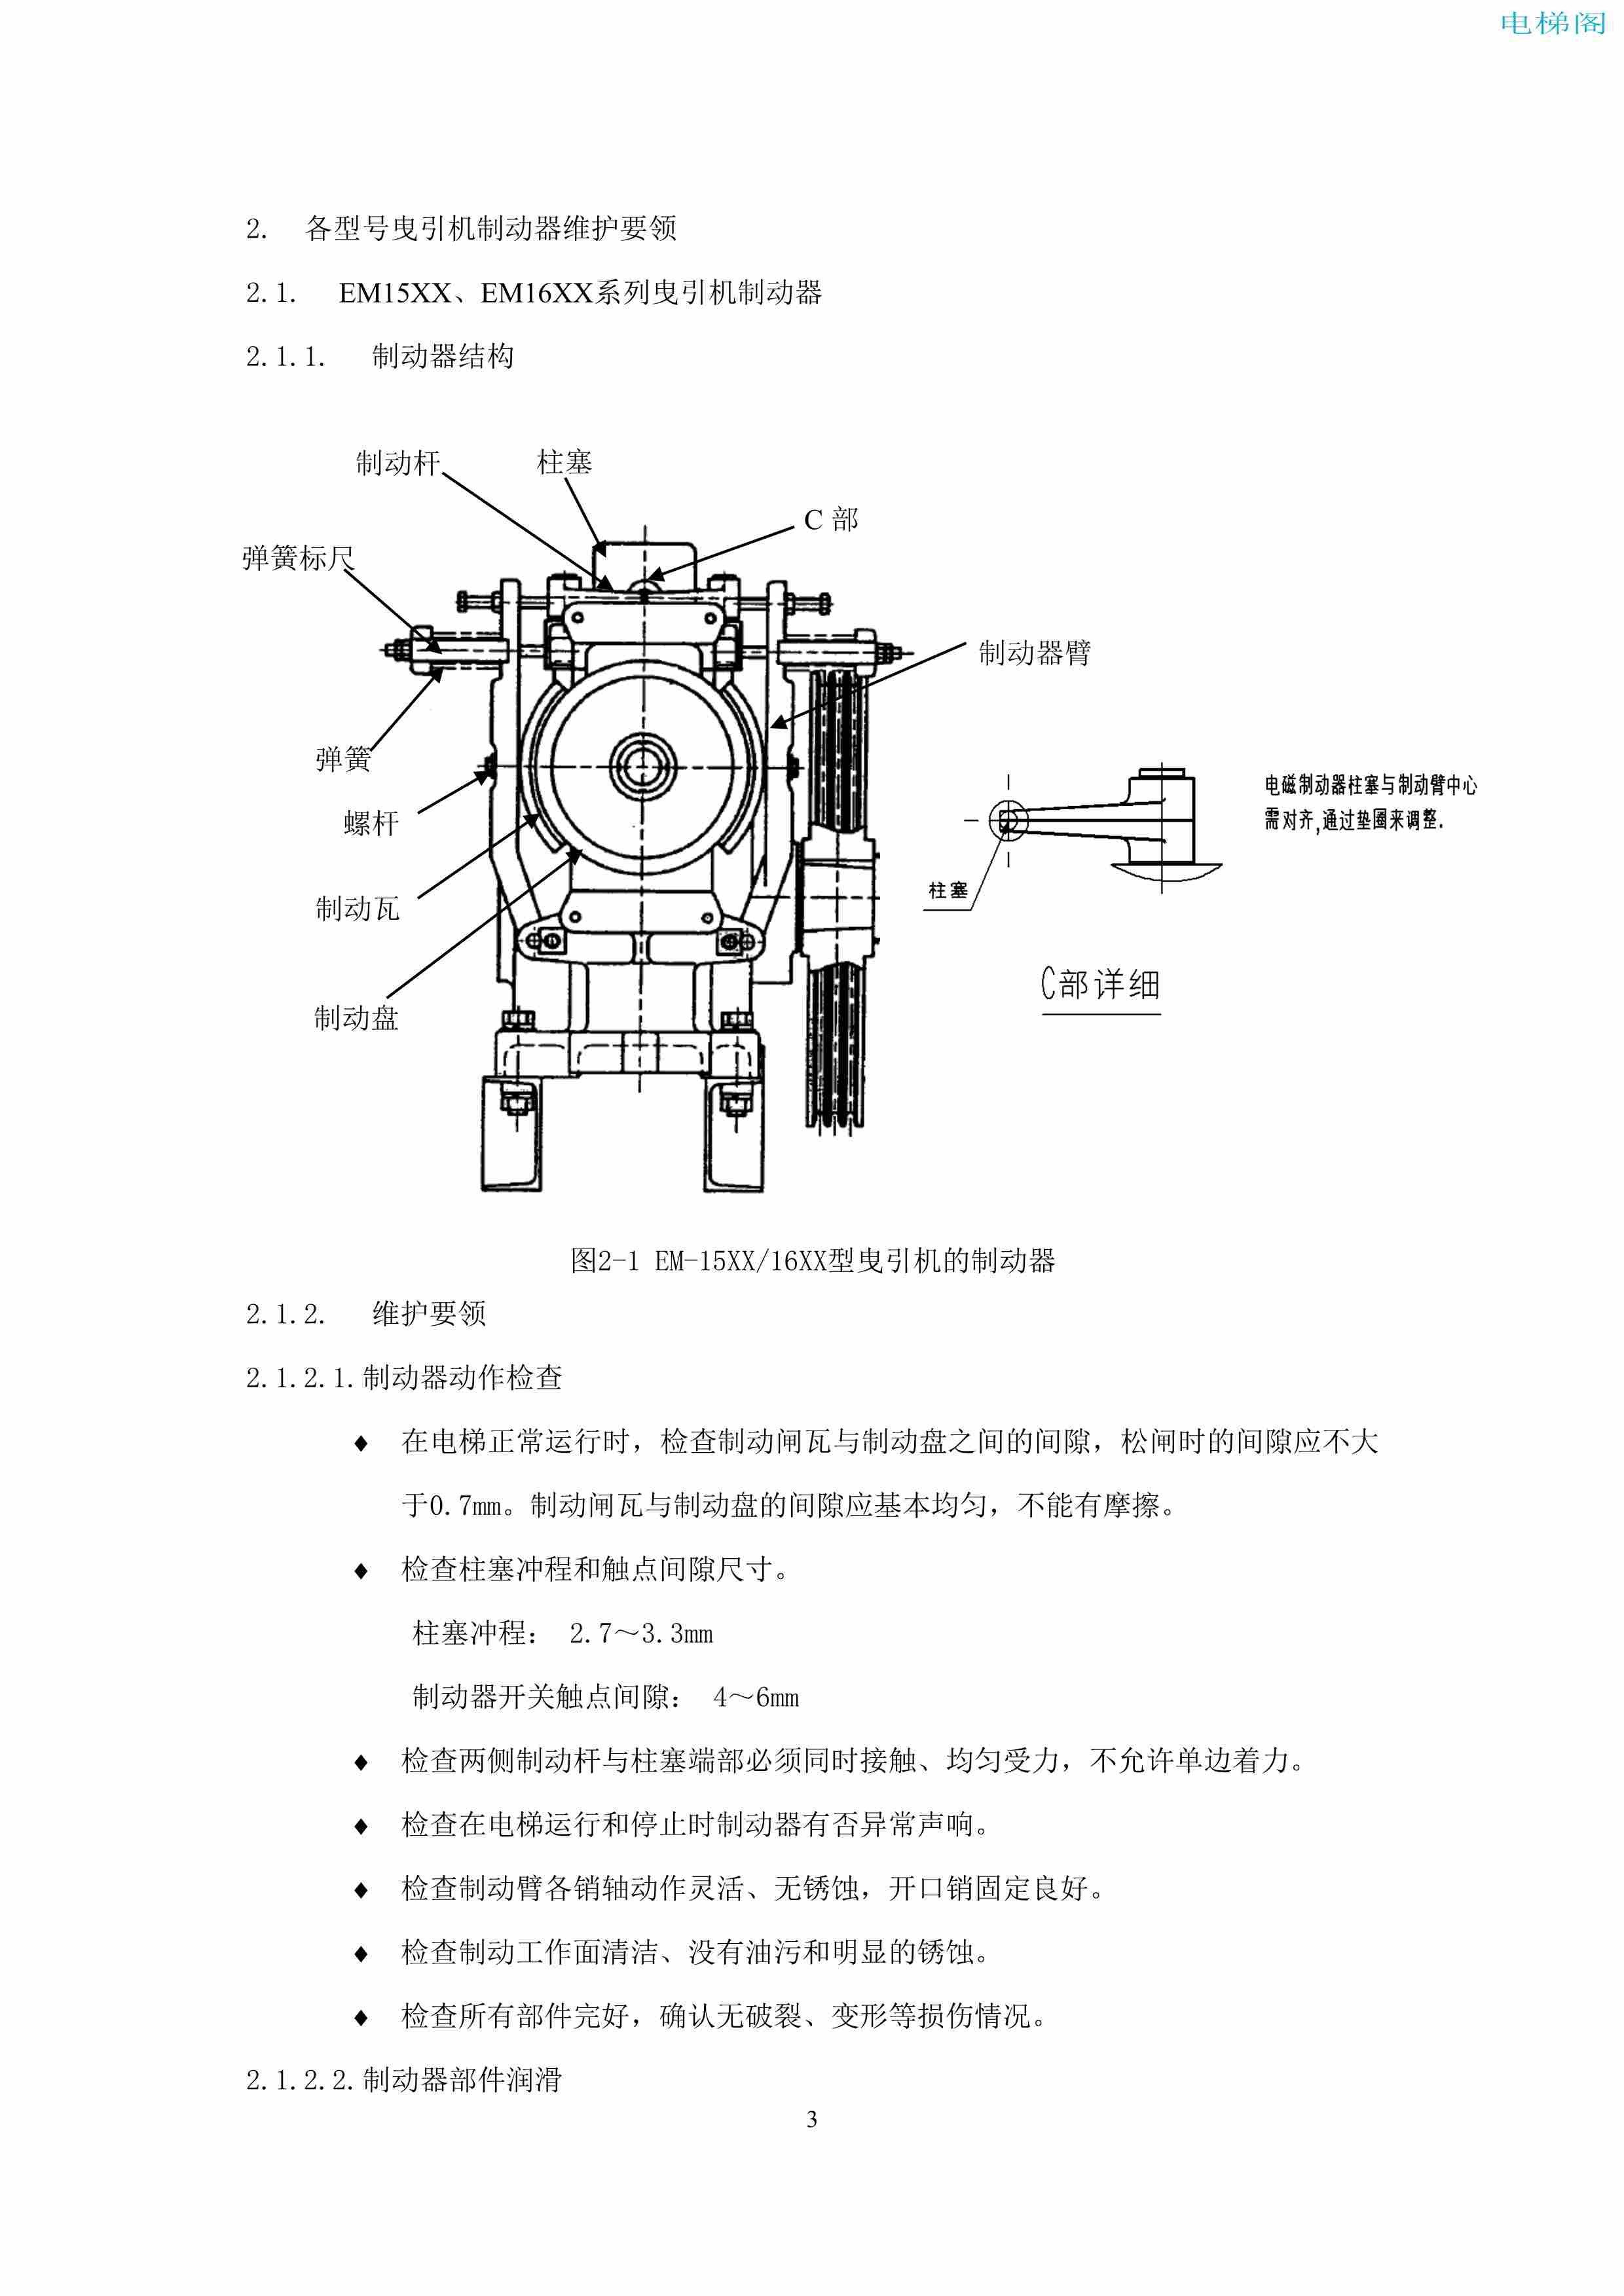 上海三菱电梯有限公司电梯制动器维护作业要领汇编_5.jpg